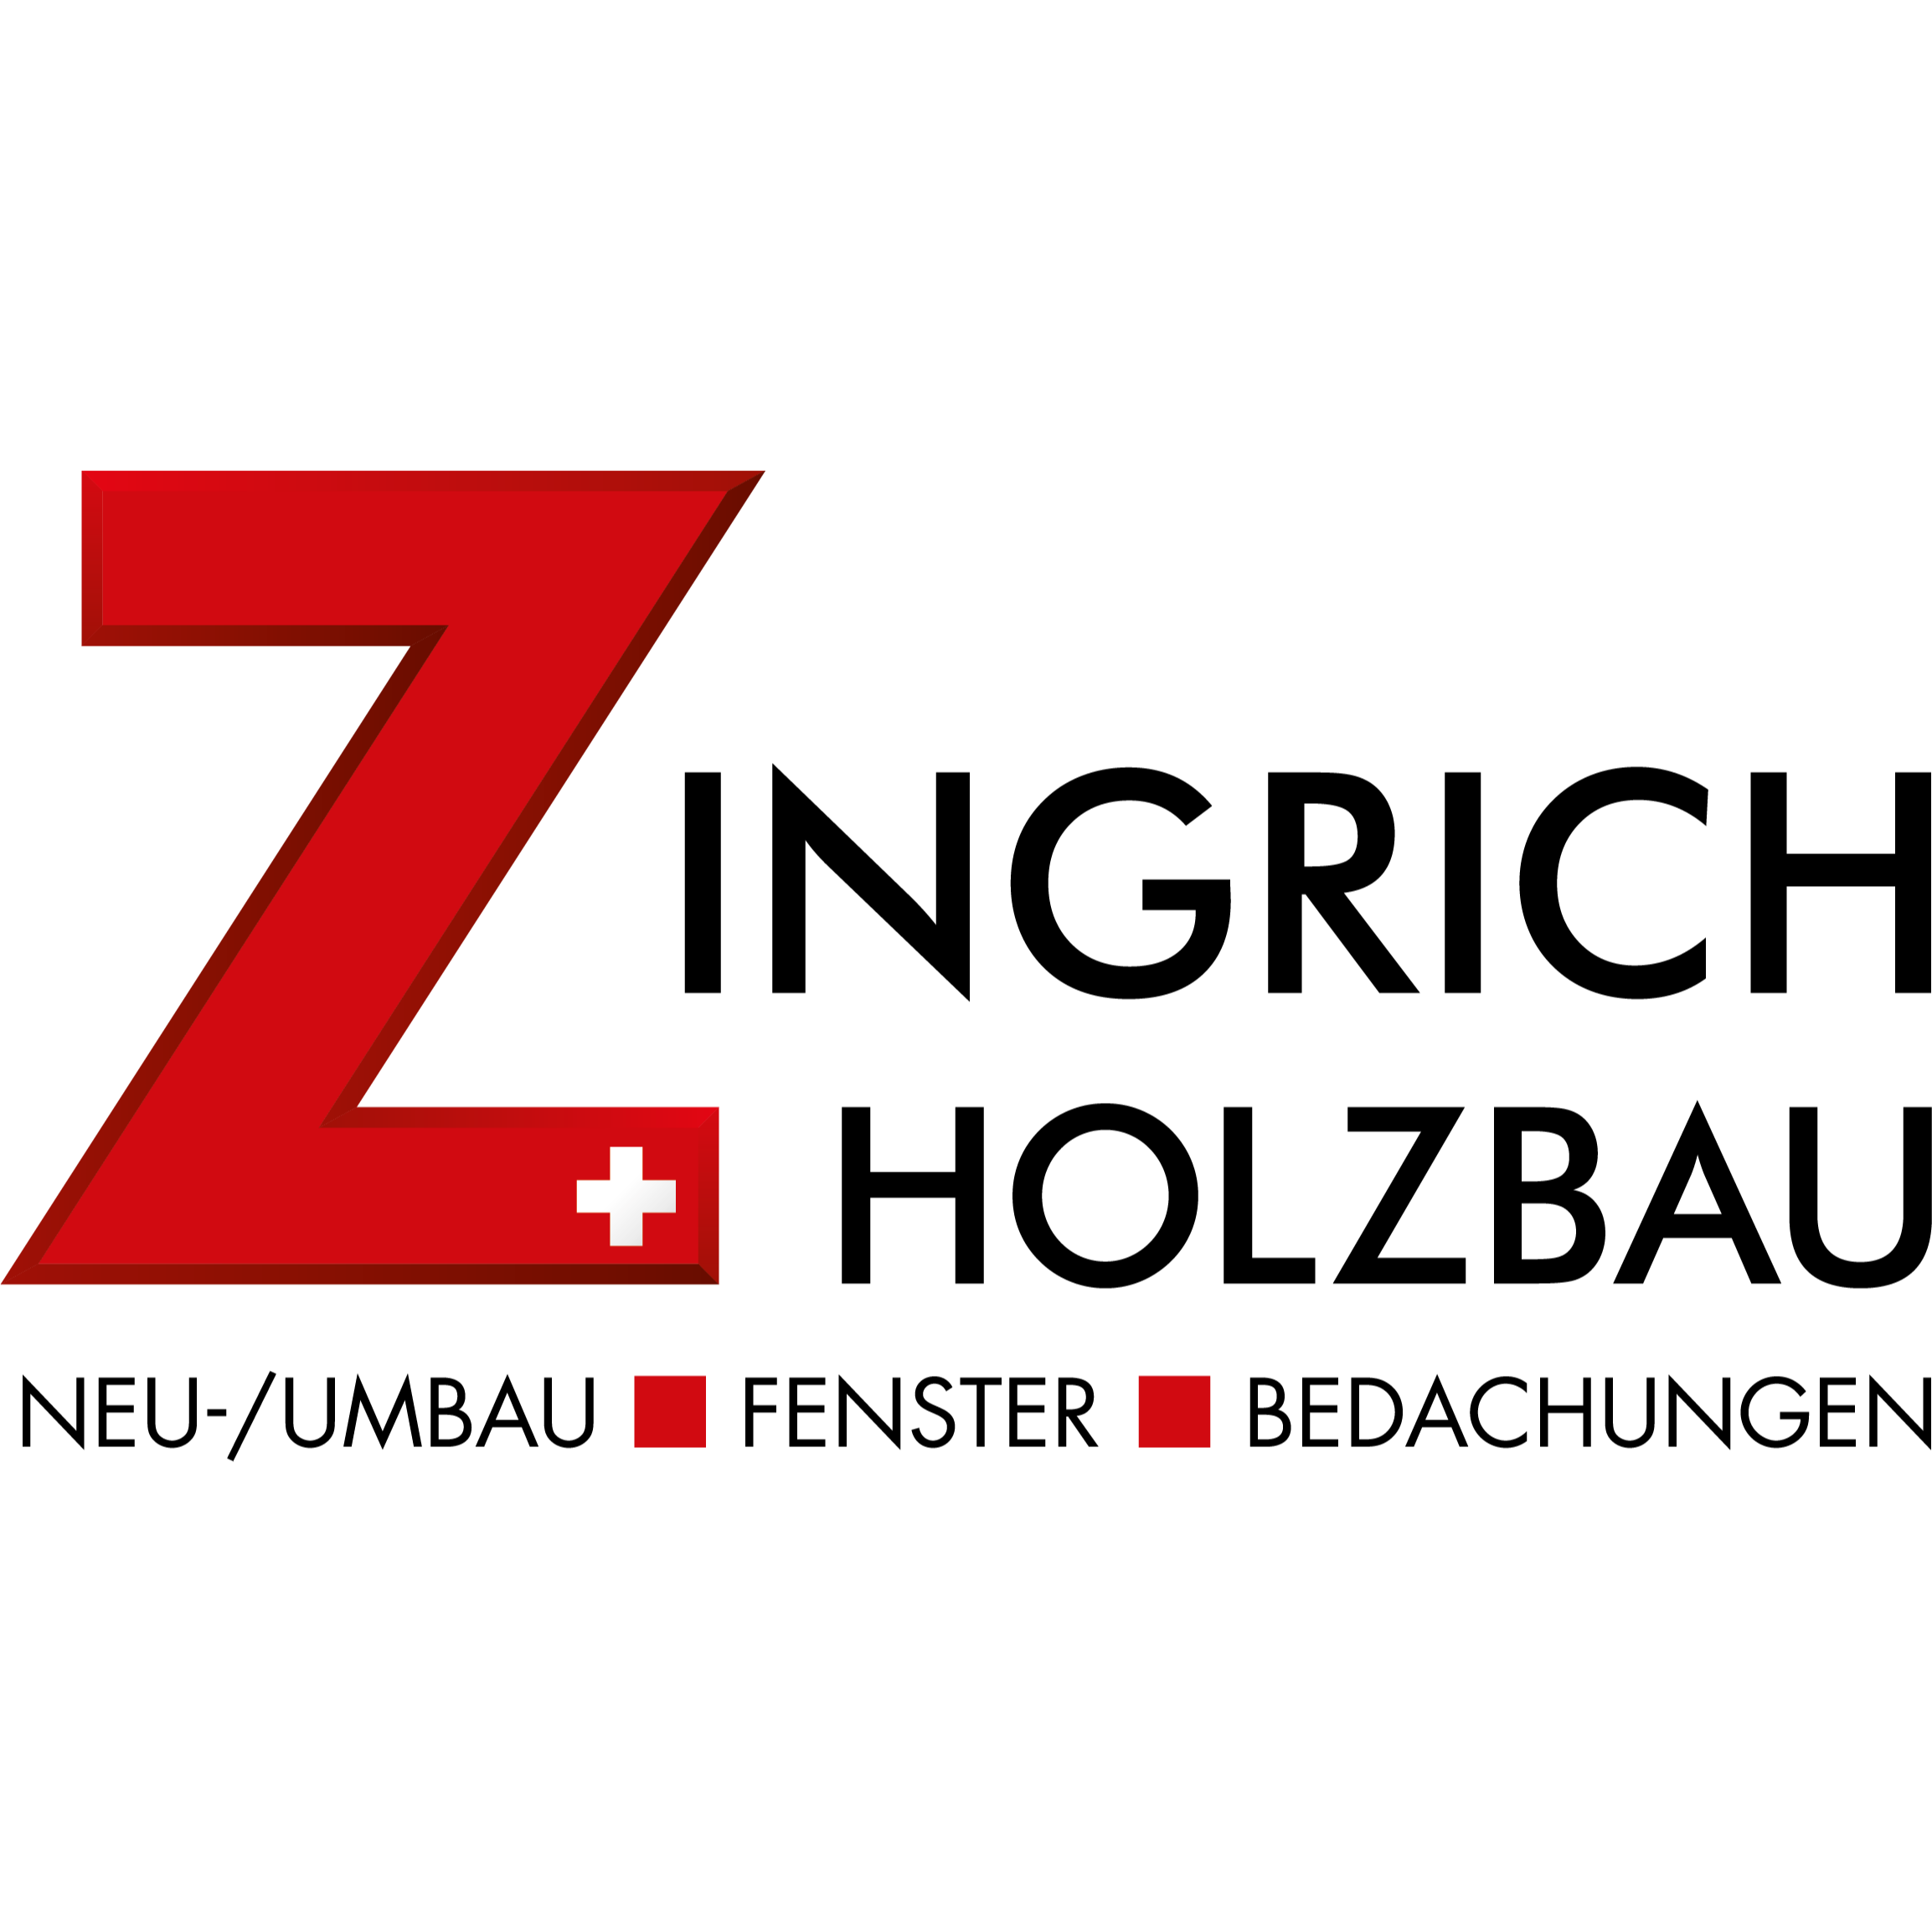 Zingrich Holzbau GmbH Logo